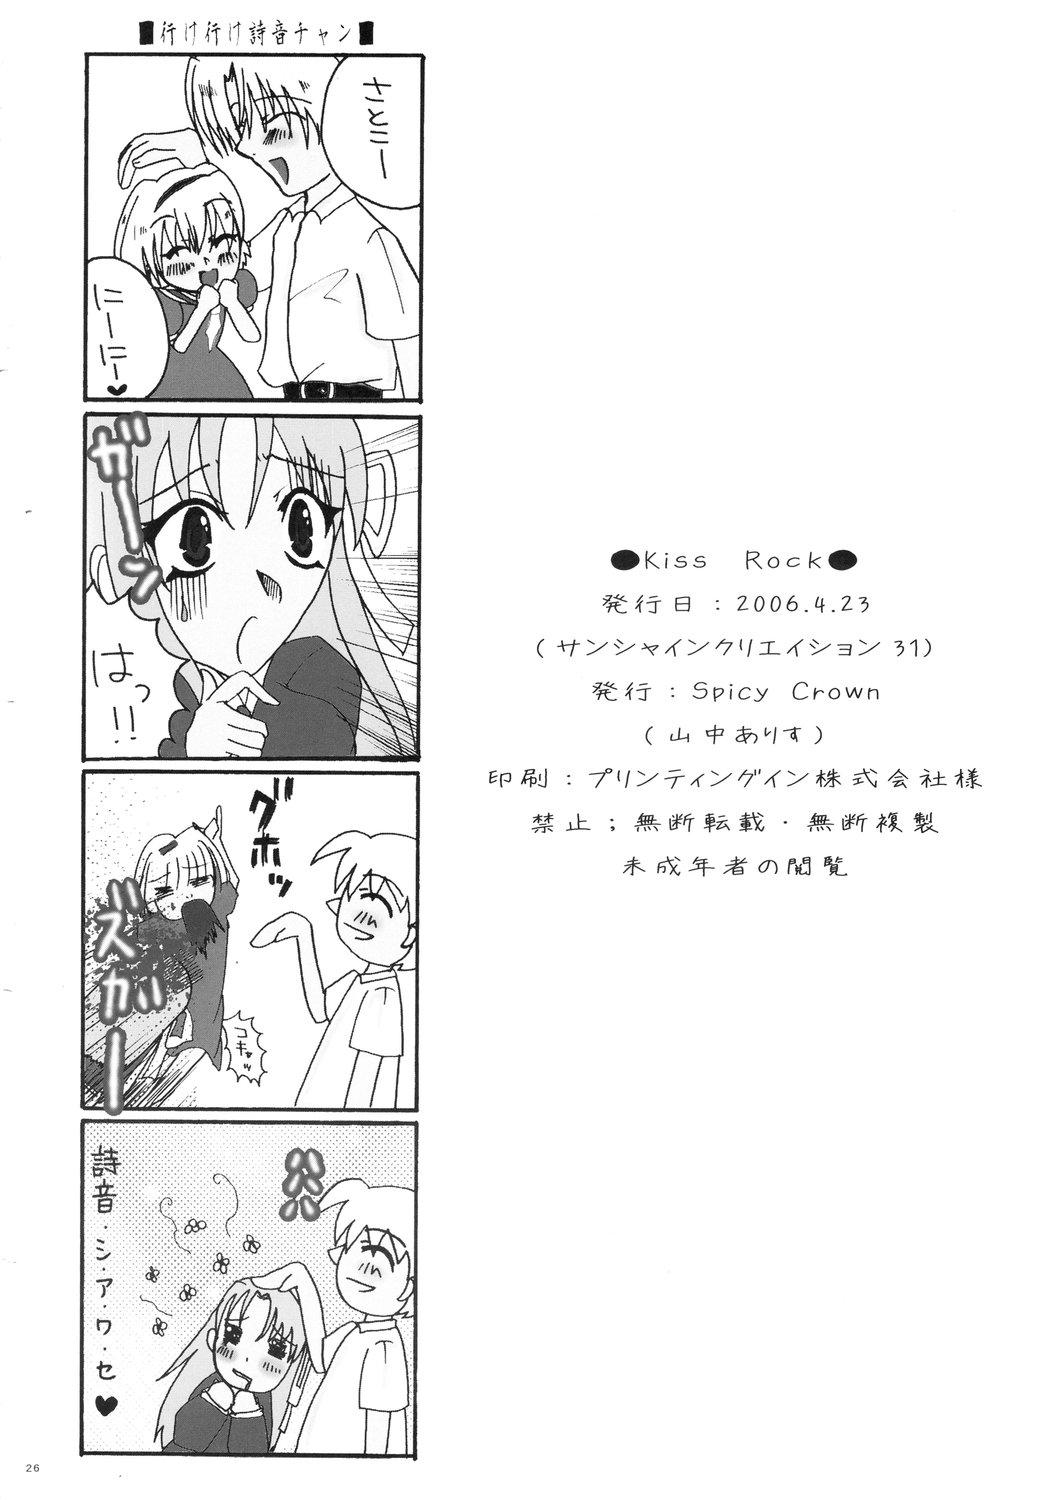 Punished Kiss Rock - Higurashi no naku koro ni Hungarian - Page 26